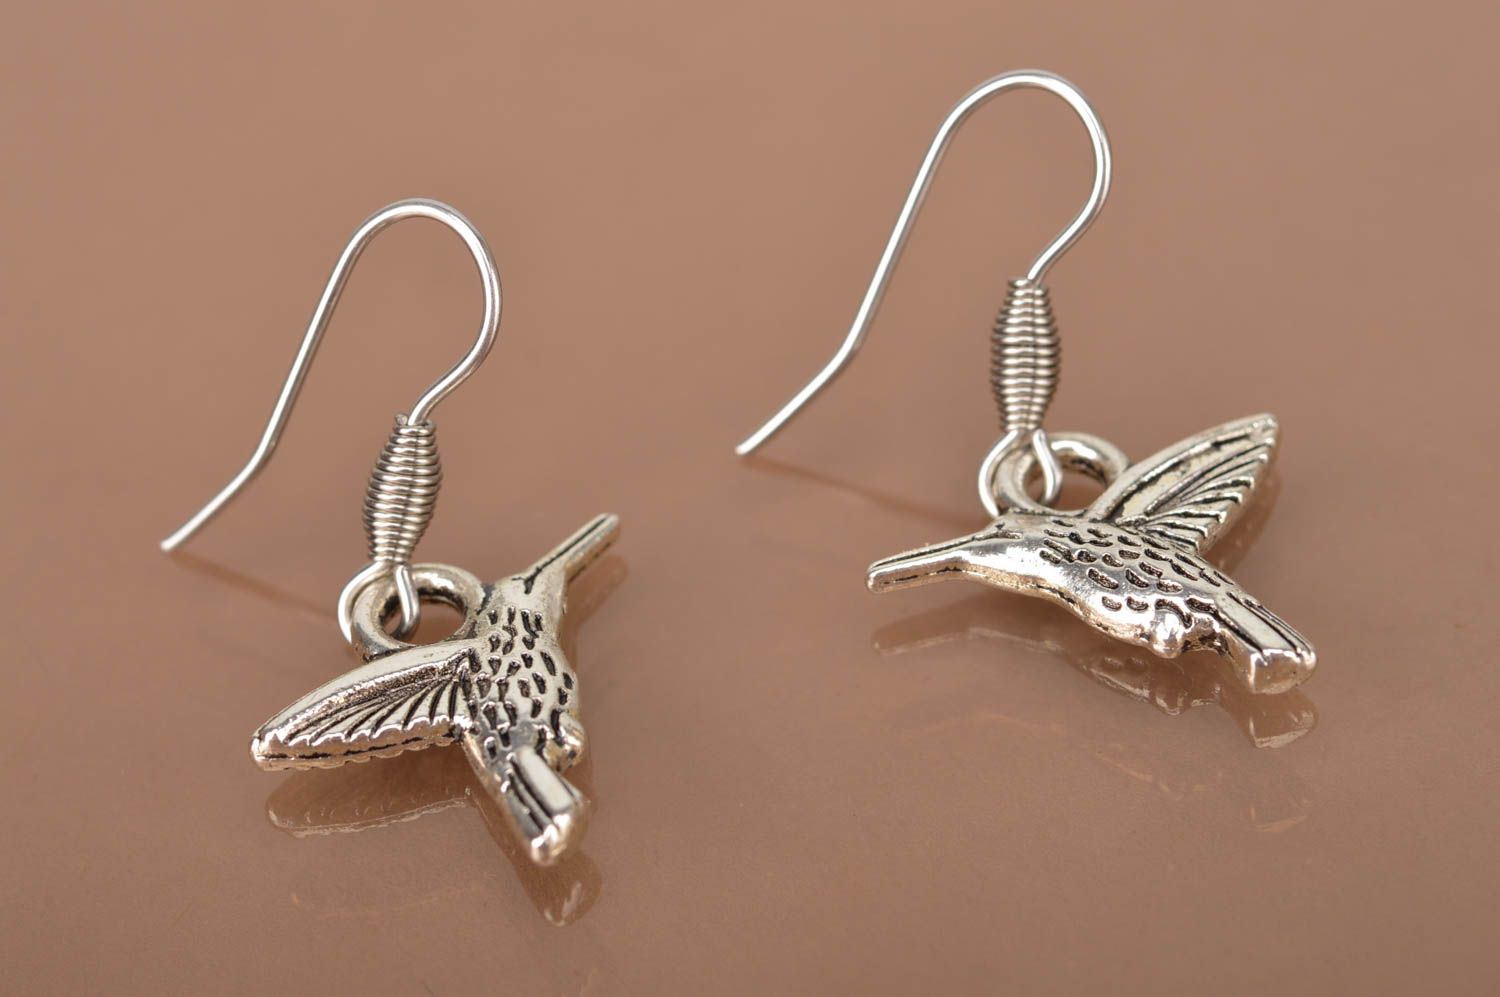 Handmade earrings metal jewelry dangling earrings women accessories gift ideas photo 3